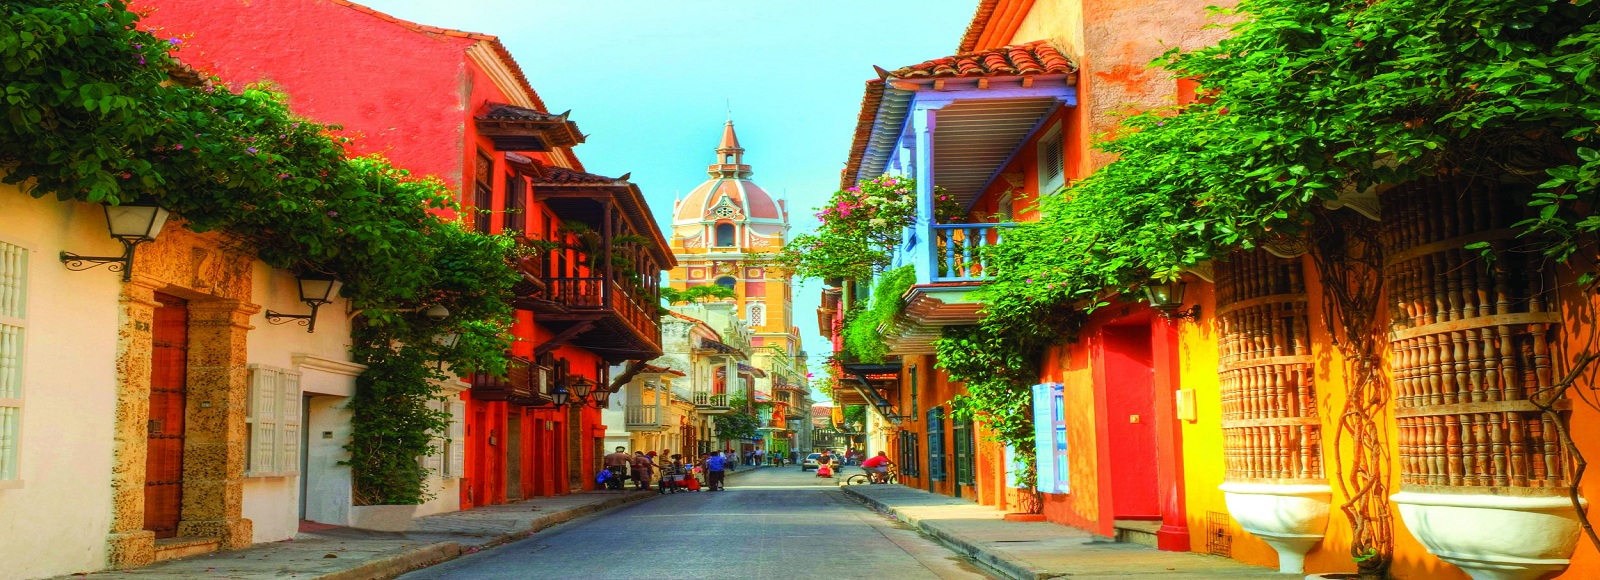 Ofertas de Traslados en Cartagena. Traslados económicos en Cartagena 